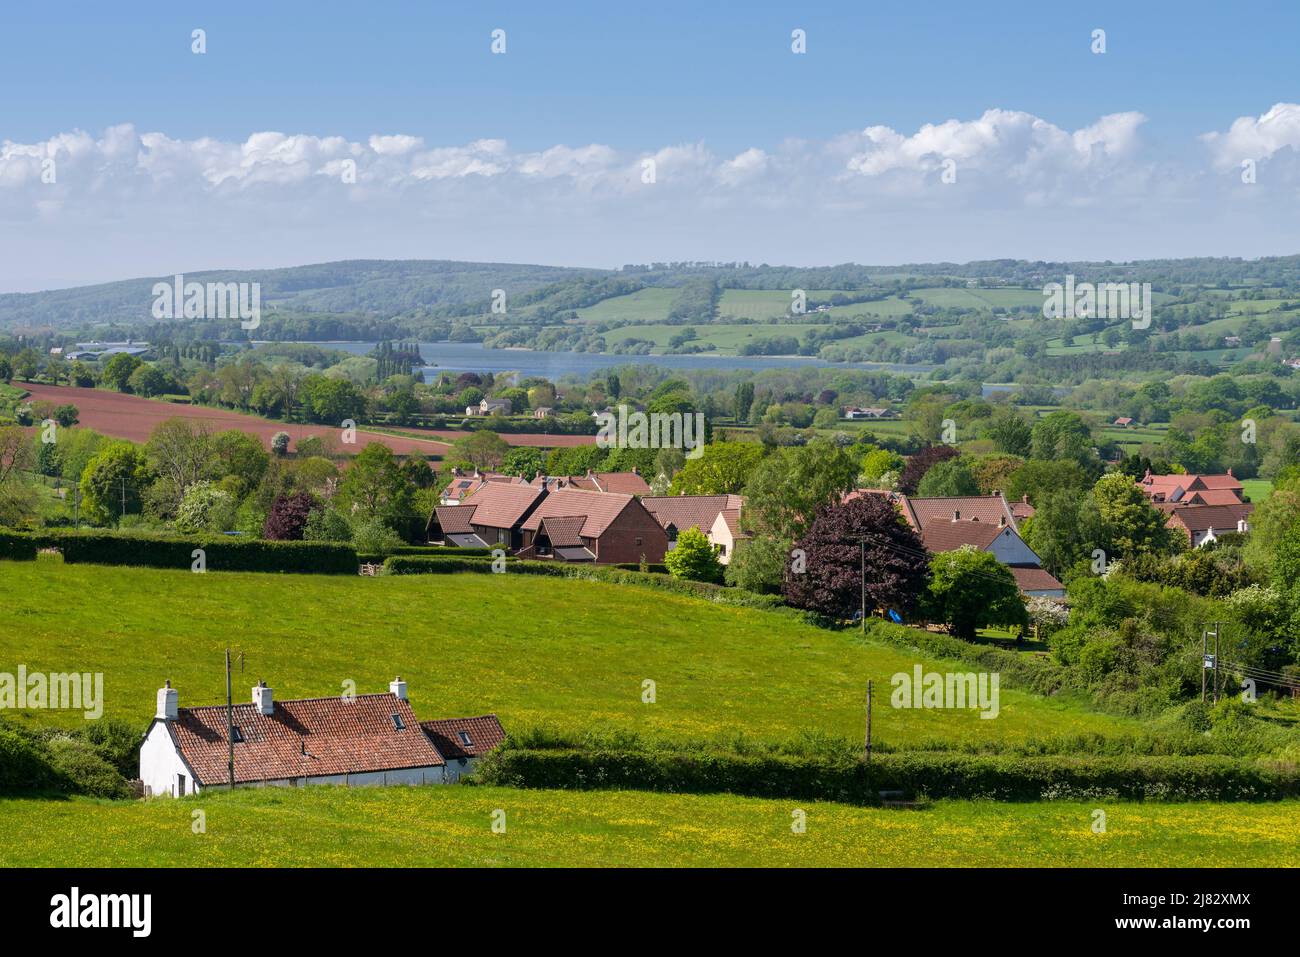 Das Dorf Compton Martin am Fuße der Mendip Hills im Chew Valley mit dem Blagdon Lake Reservoir in der Ferne, Somerset, England. Stockfoto